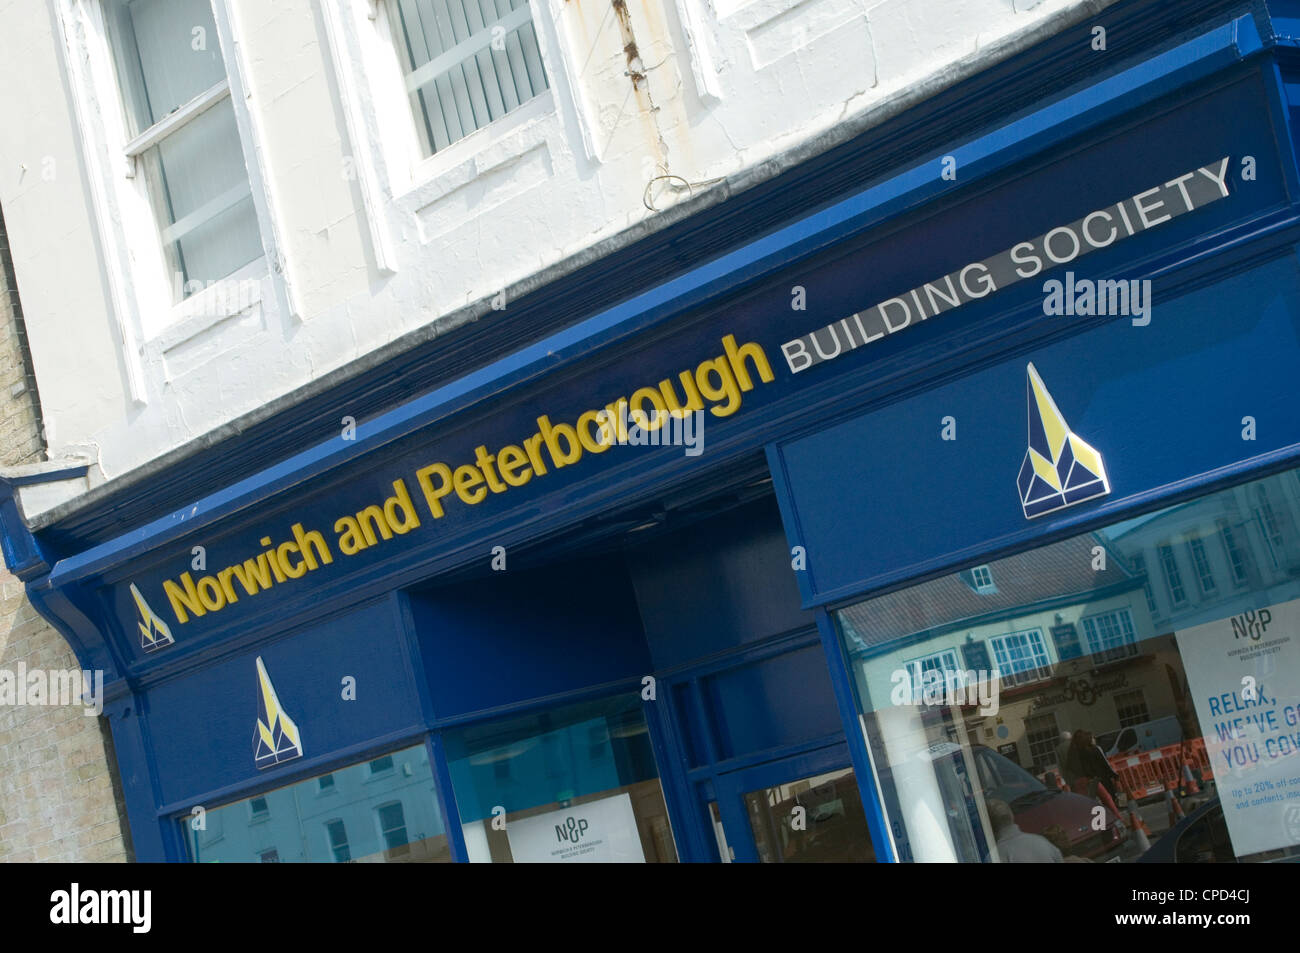 Norwich e peterborough building society banca regionale banche highstreet high street regno unito Foto Stock